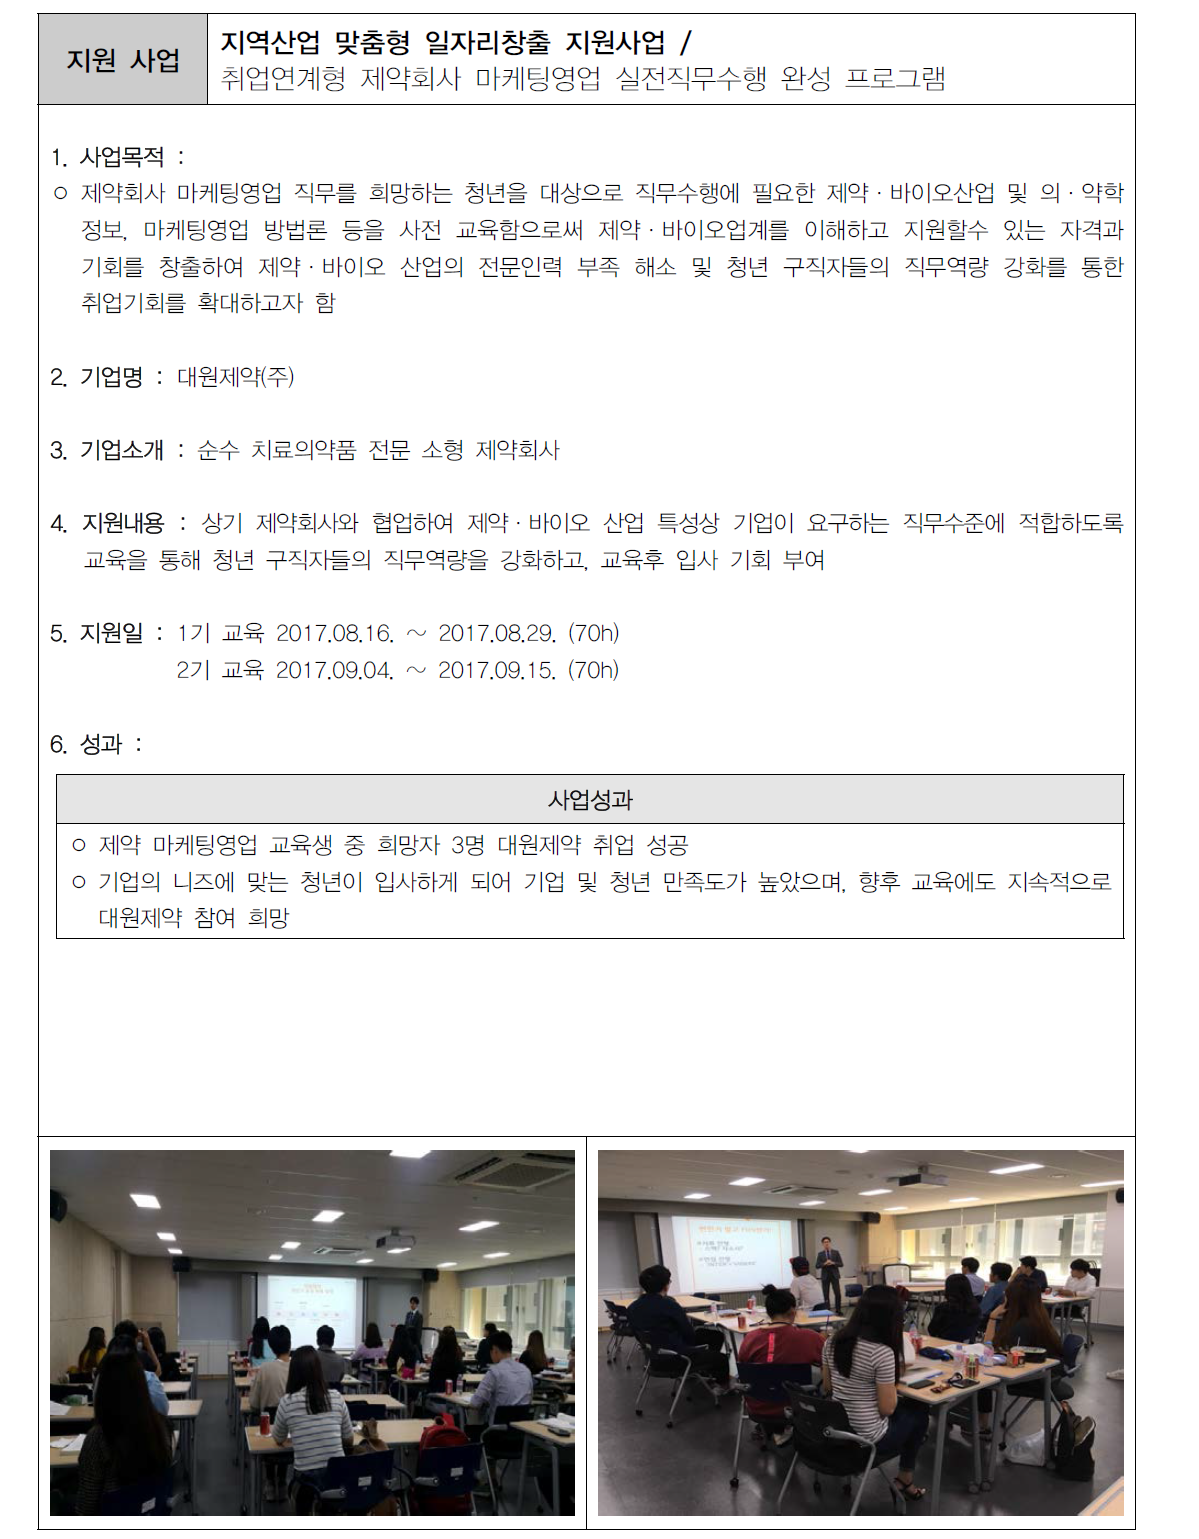 서울센터 부처 연계지원사업 인력양성 및 고용지원 사업 성공사례(3)